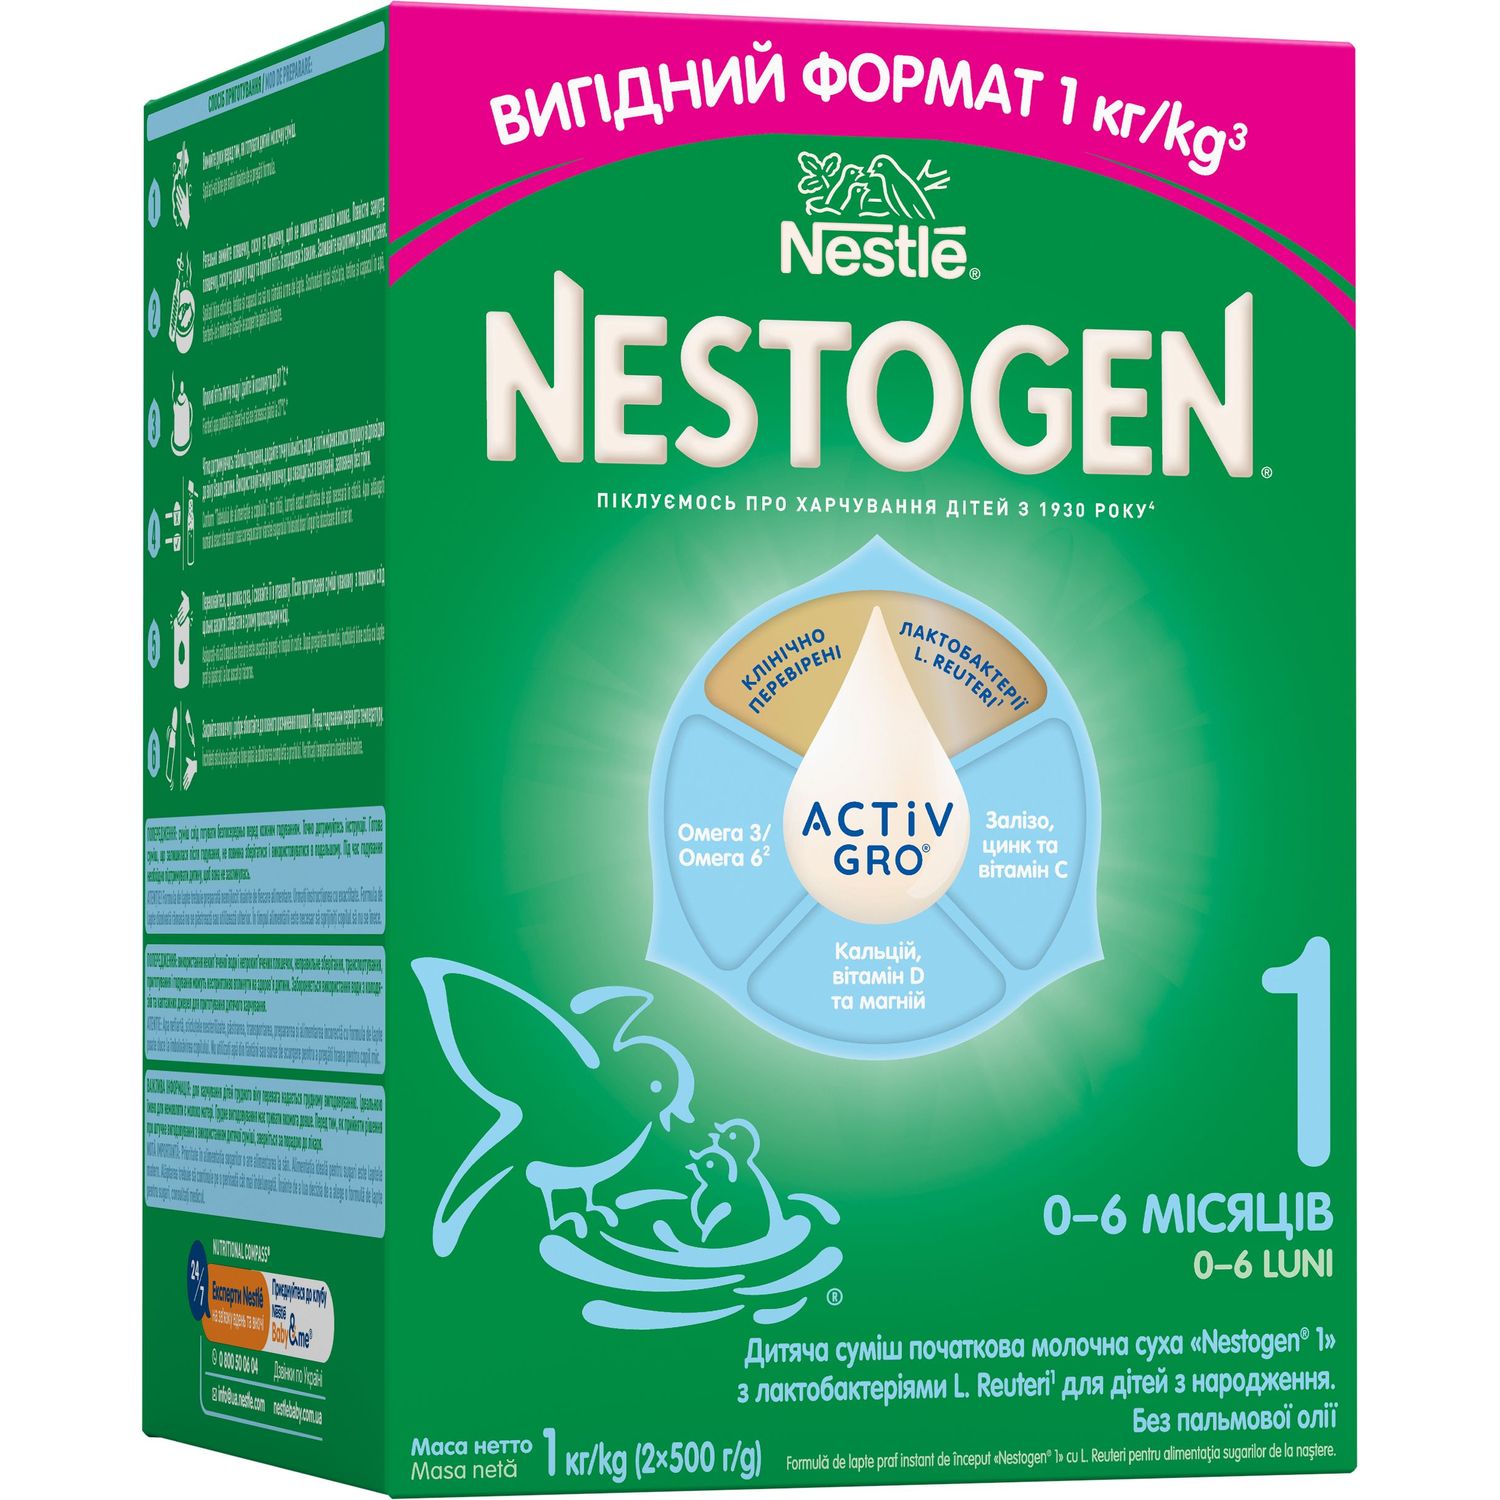 Cуміш молочна суха Nestogen 1 з лактобактеріями L. Reuteri для дітей з народження 1000 г - фото 1